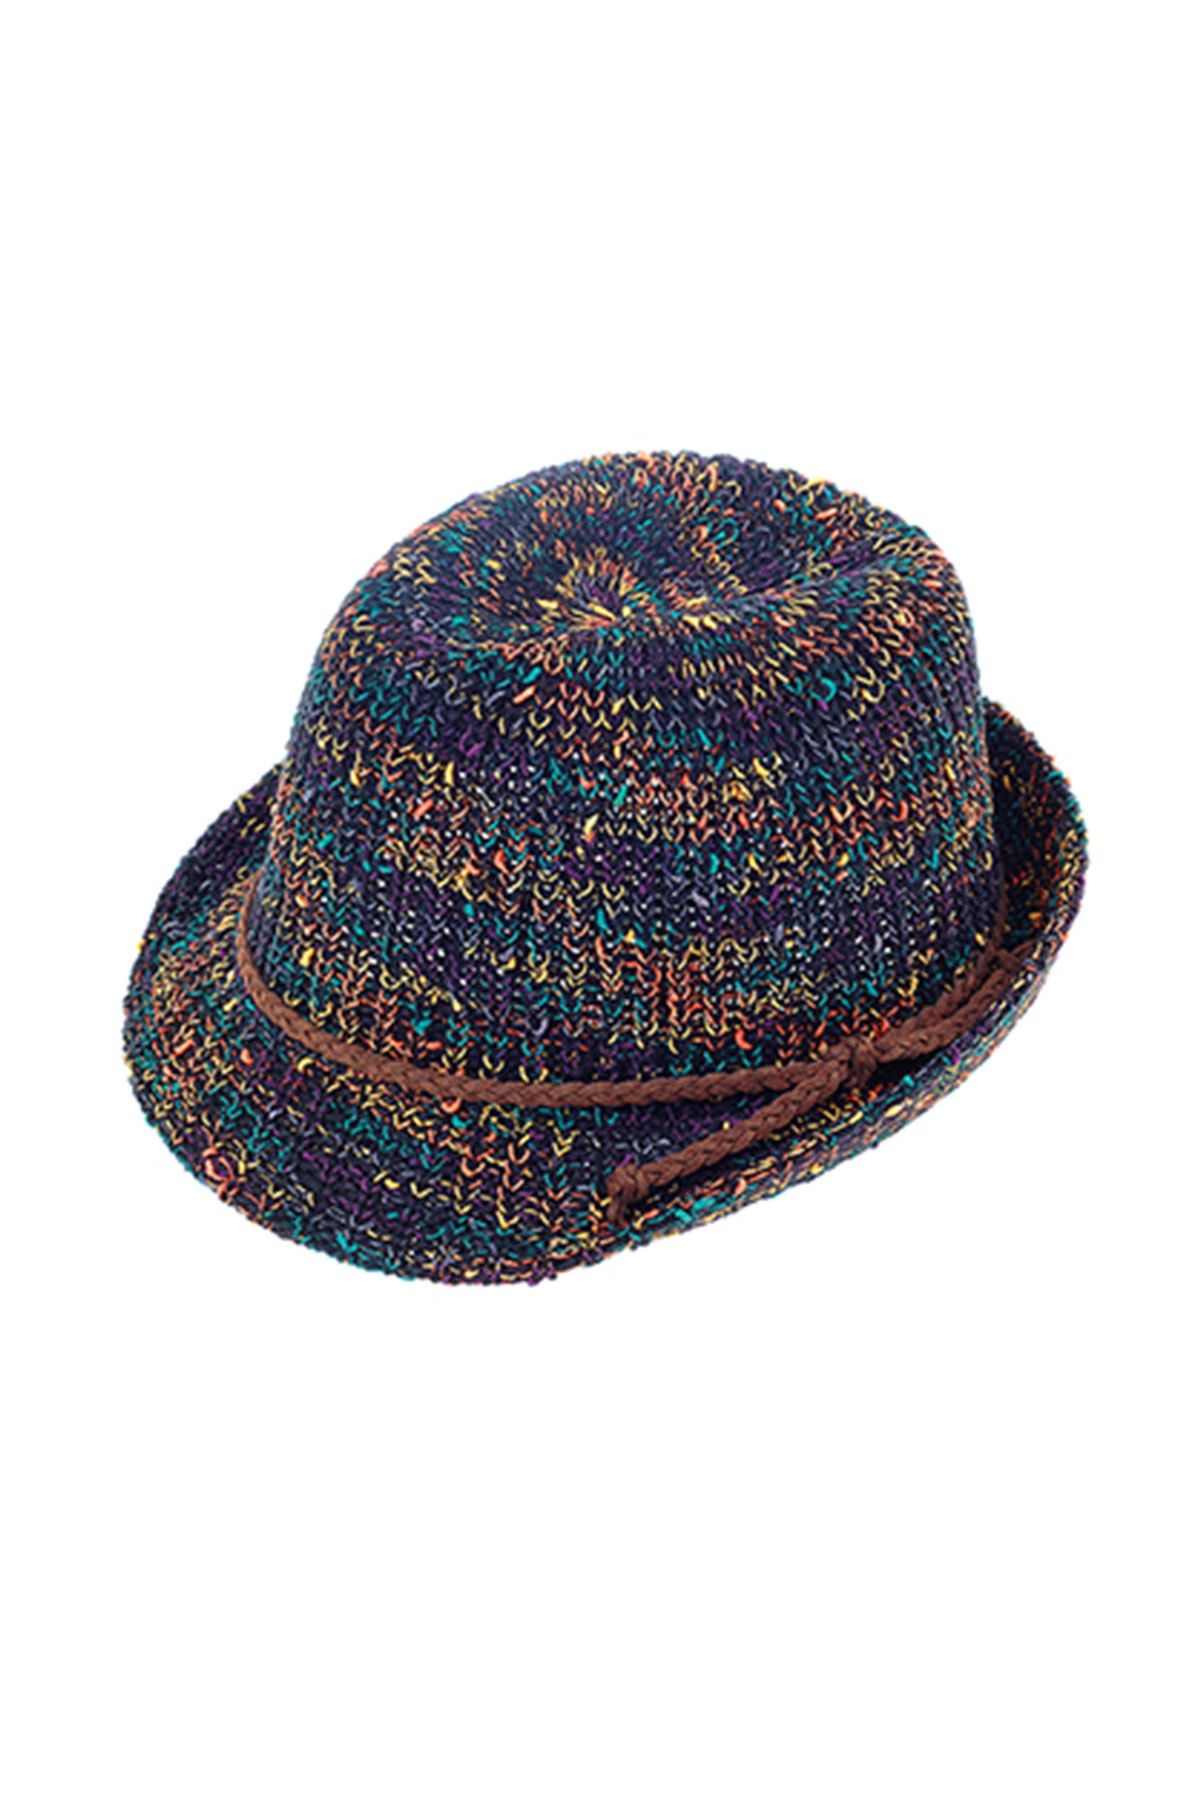 Bay Şapkacı Tükendi - Renkli Örme Kadın Fötr Şapka